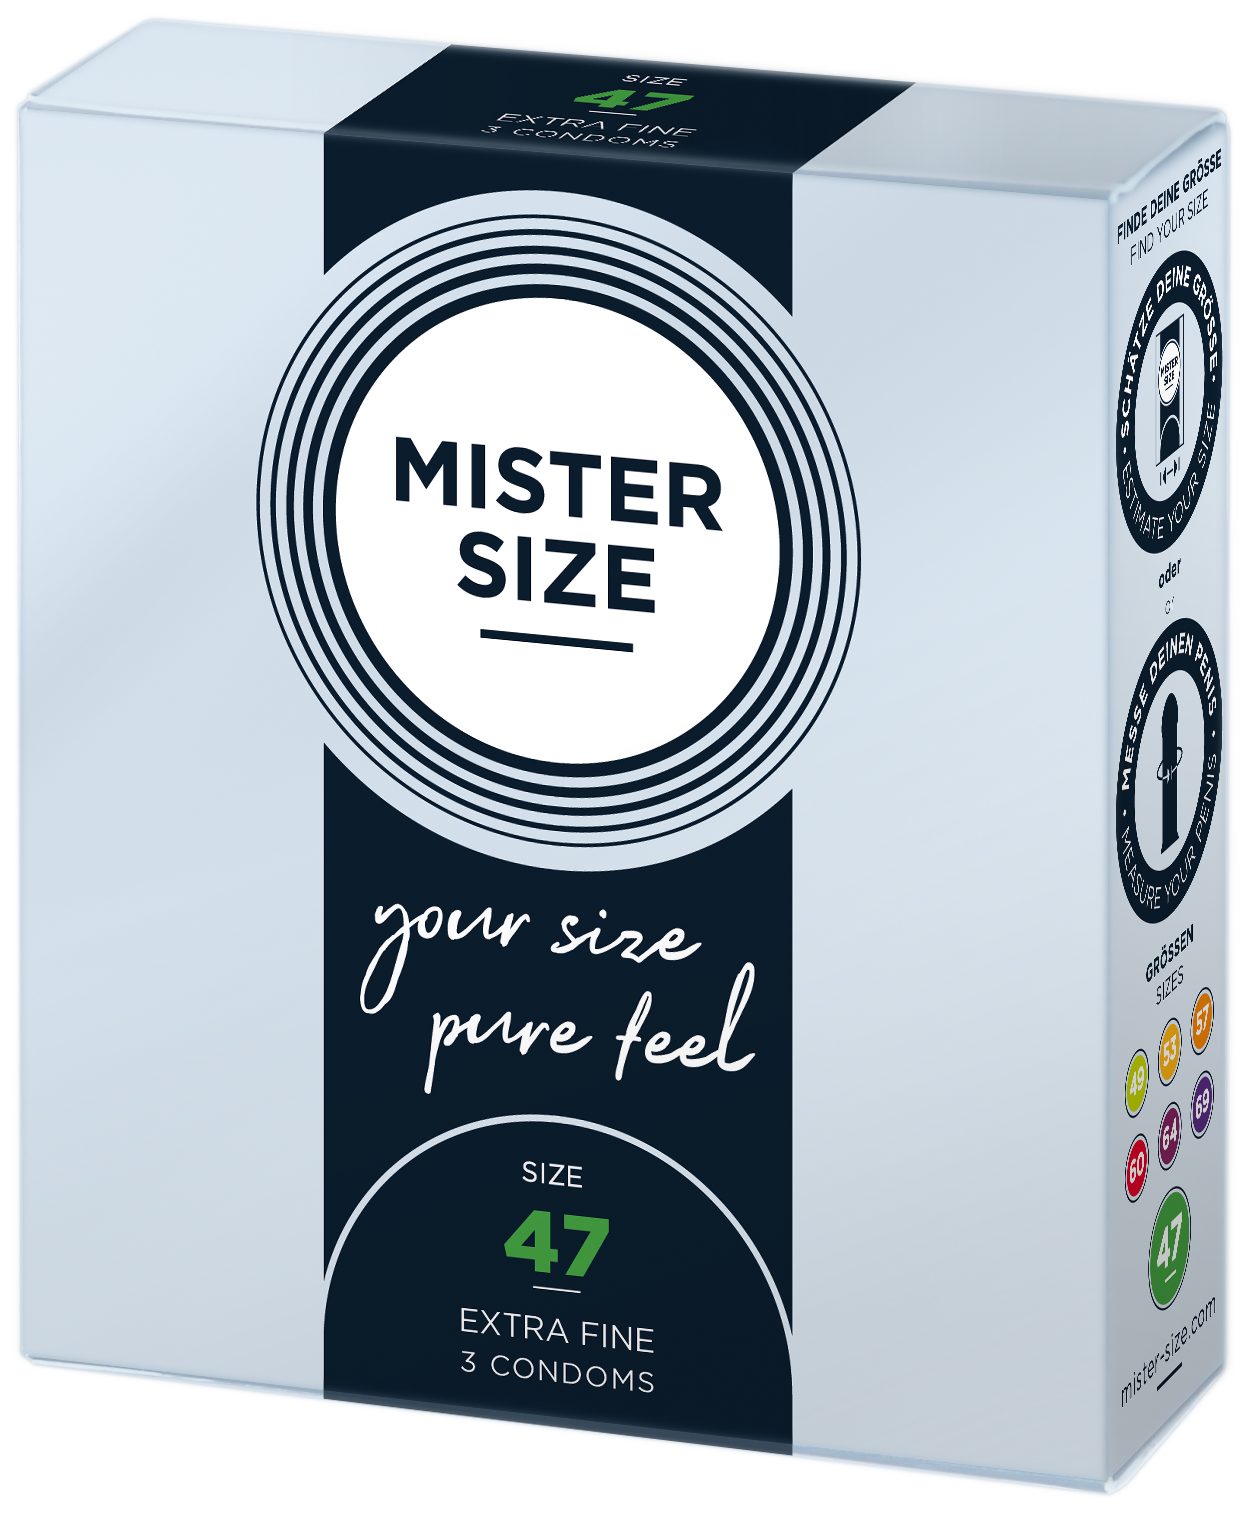 Stück, gefühlsecht & Nominale Breite Kondome feucht SIZE MISTER 47mm, 3